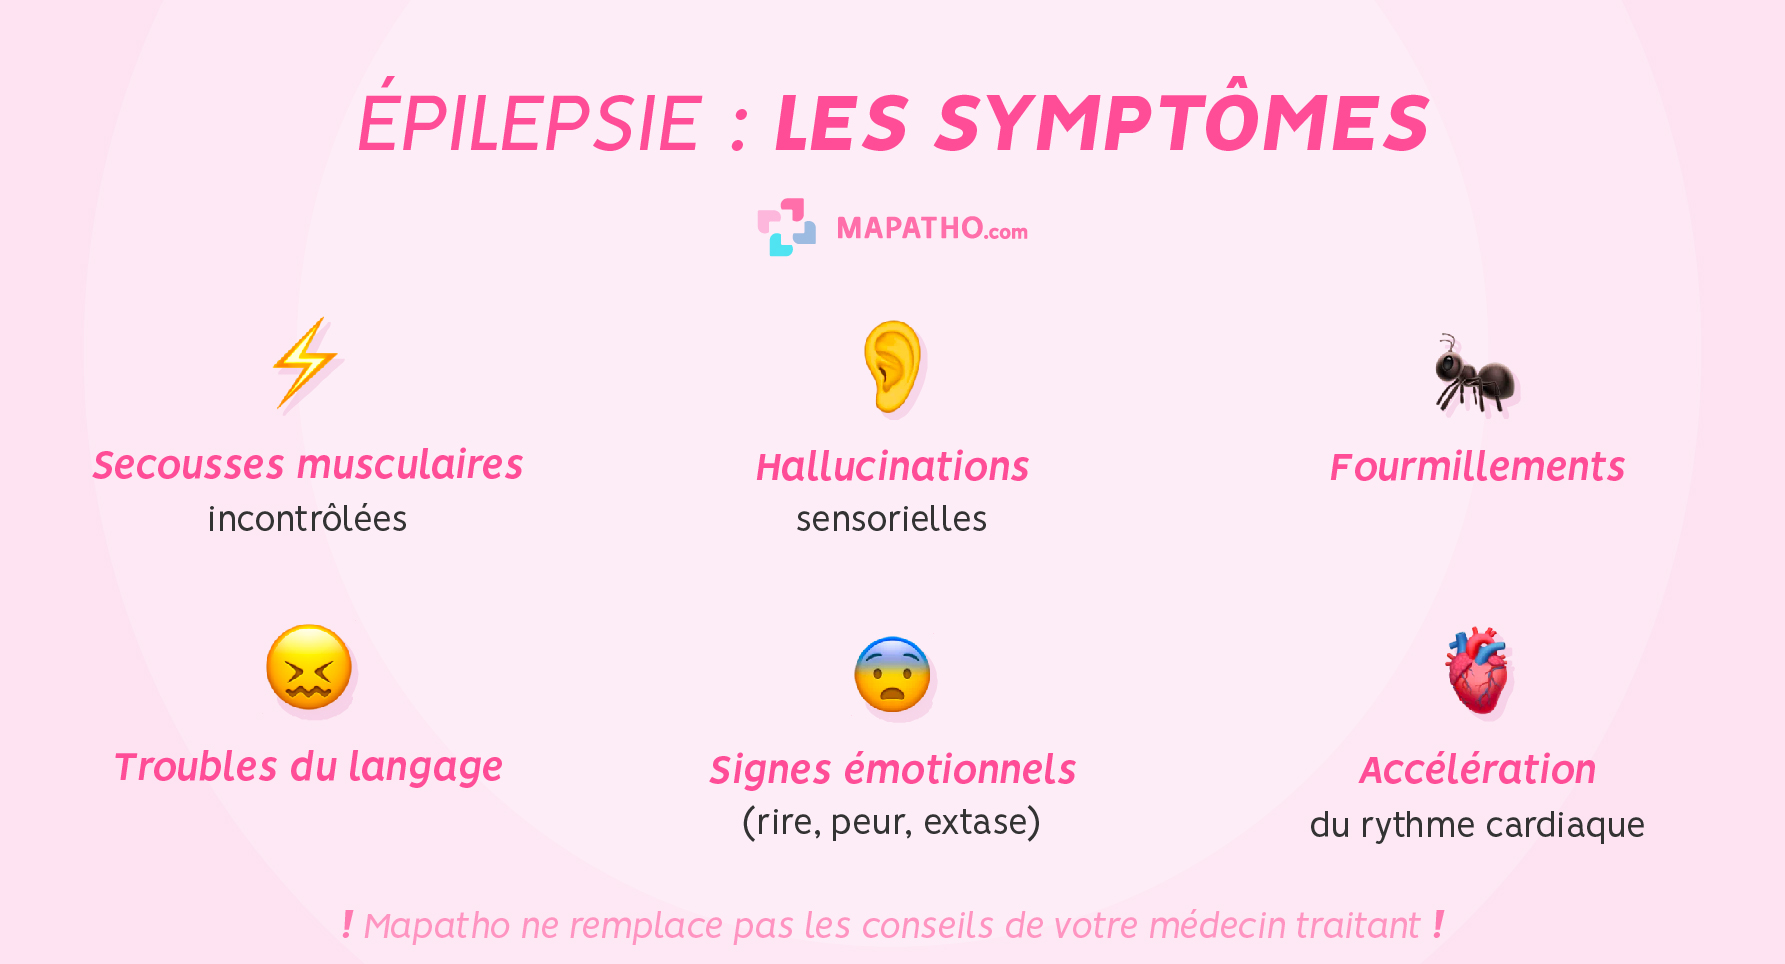 Les symptômes de l'épilepsie